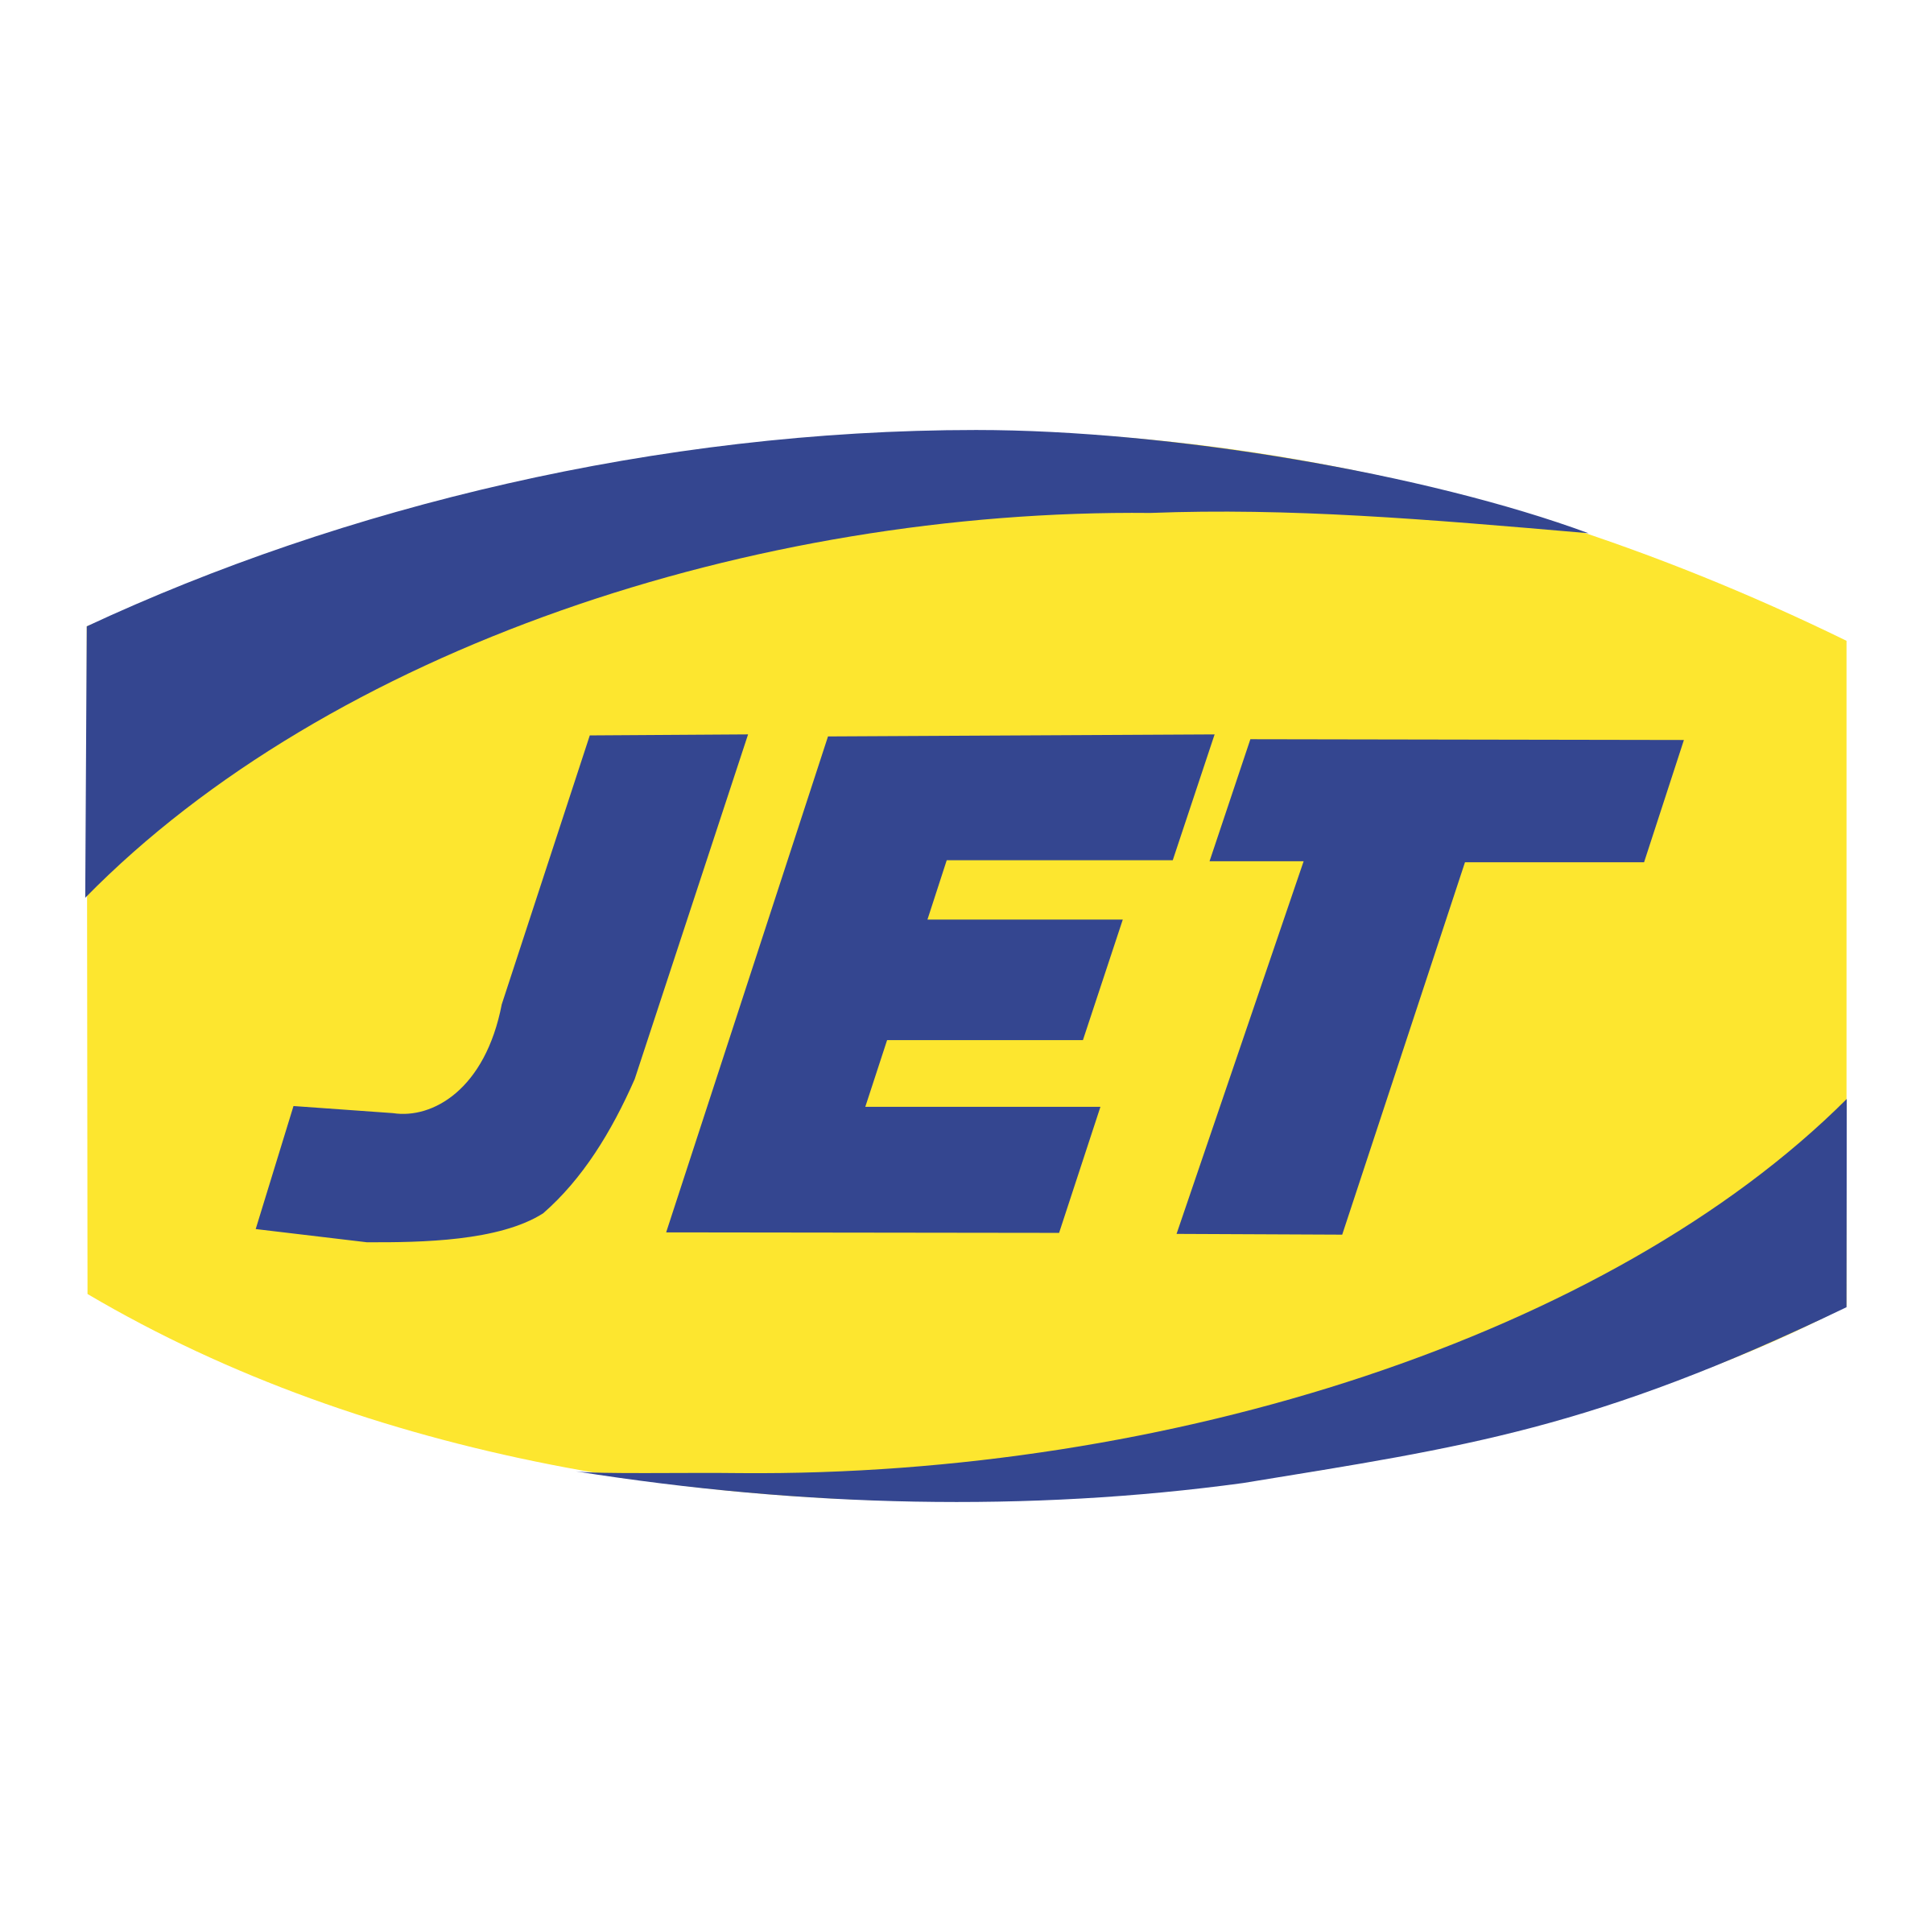 JET Logo PNG Transparent & SVG Vector.